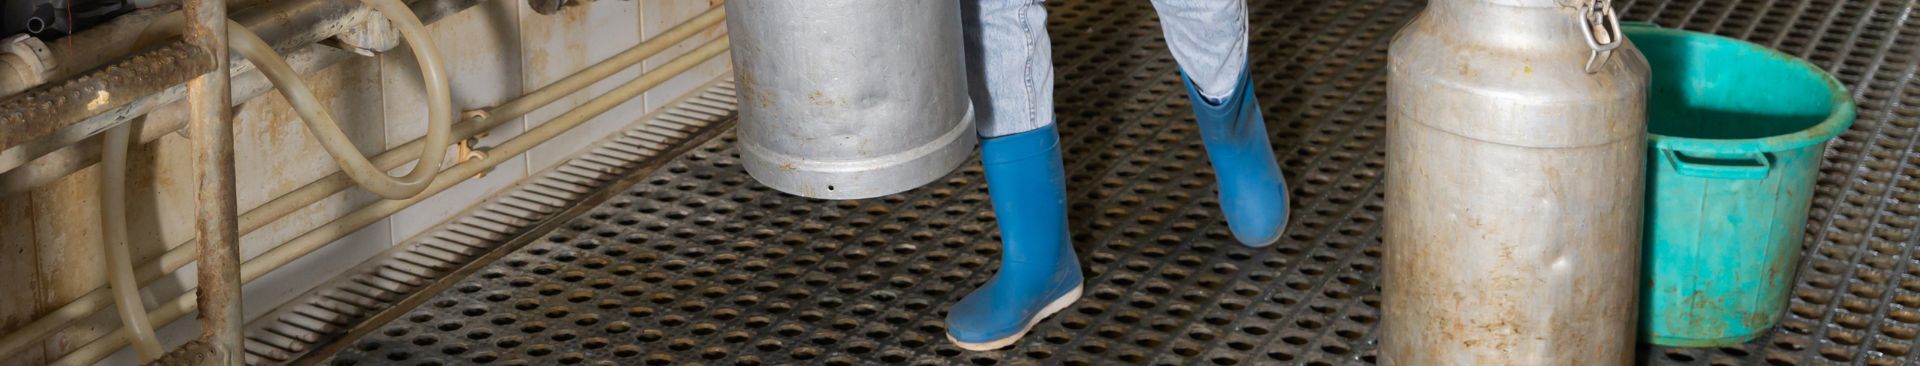 slip resistant mat in milking parlor